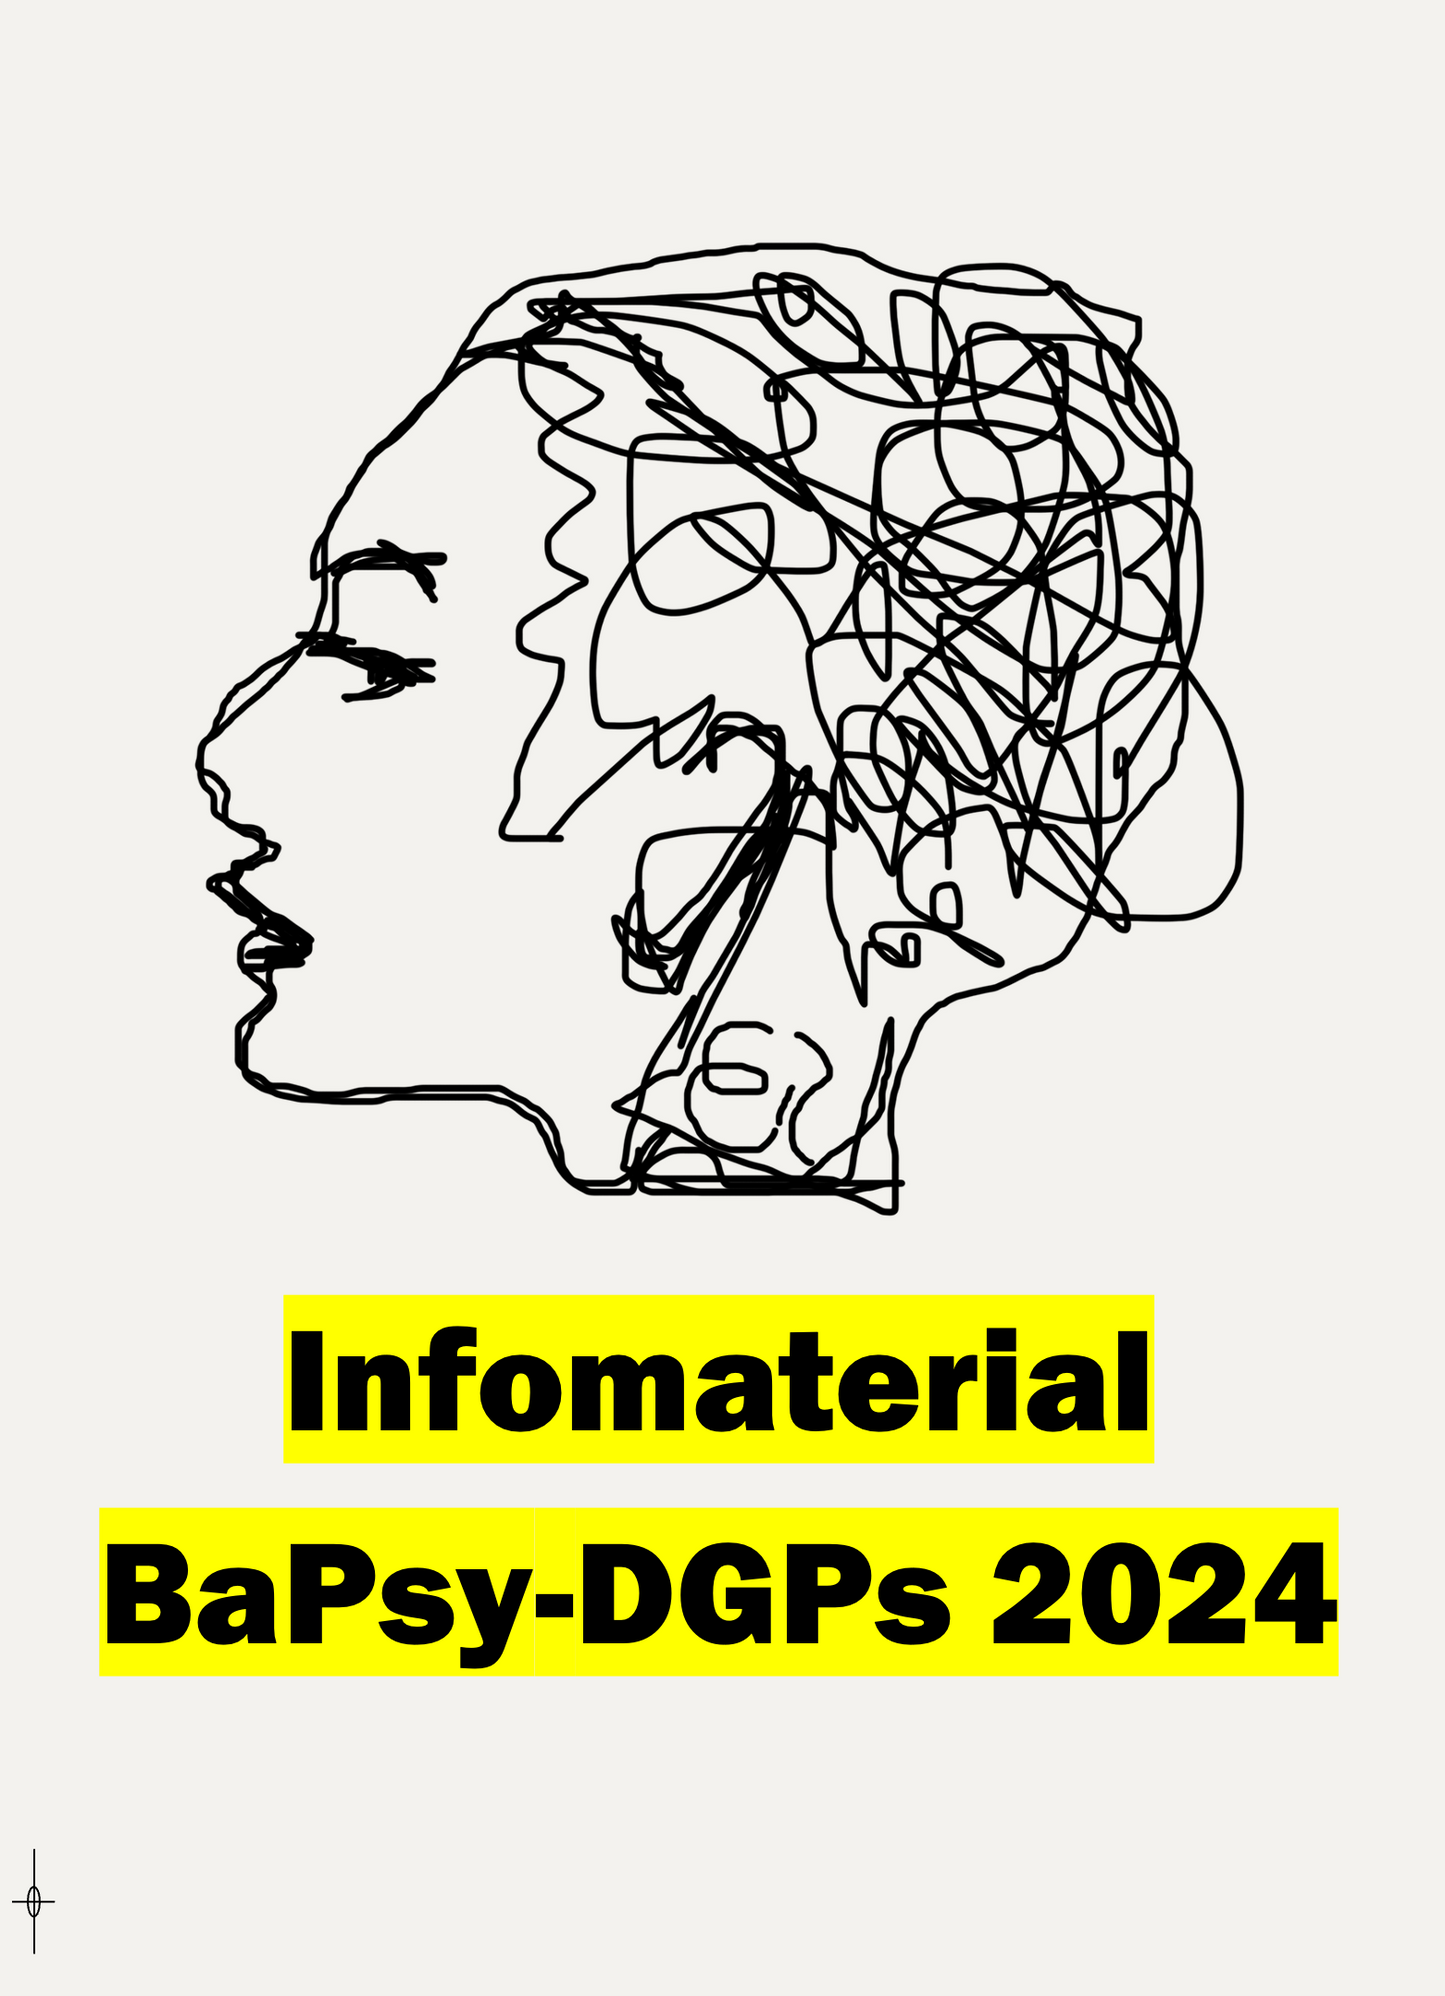 BaPsy-DGPs - Free information material